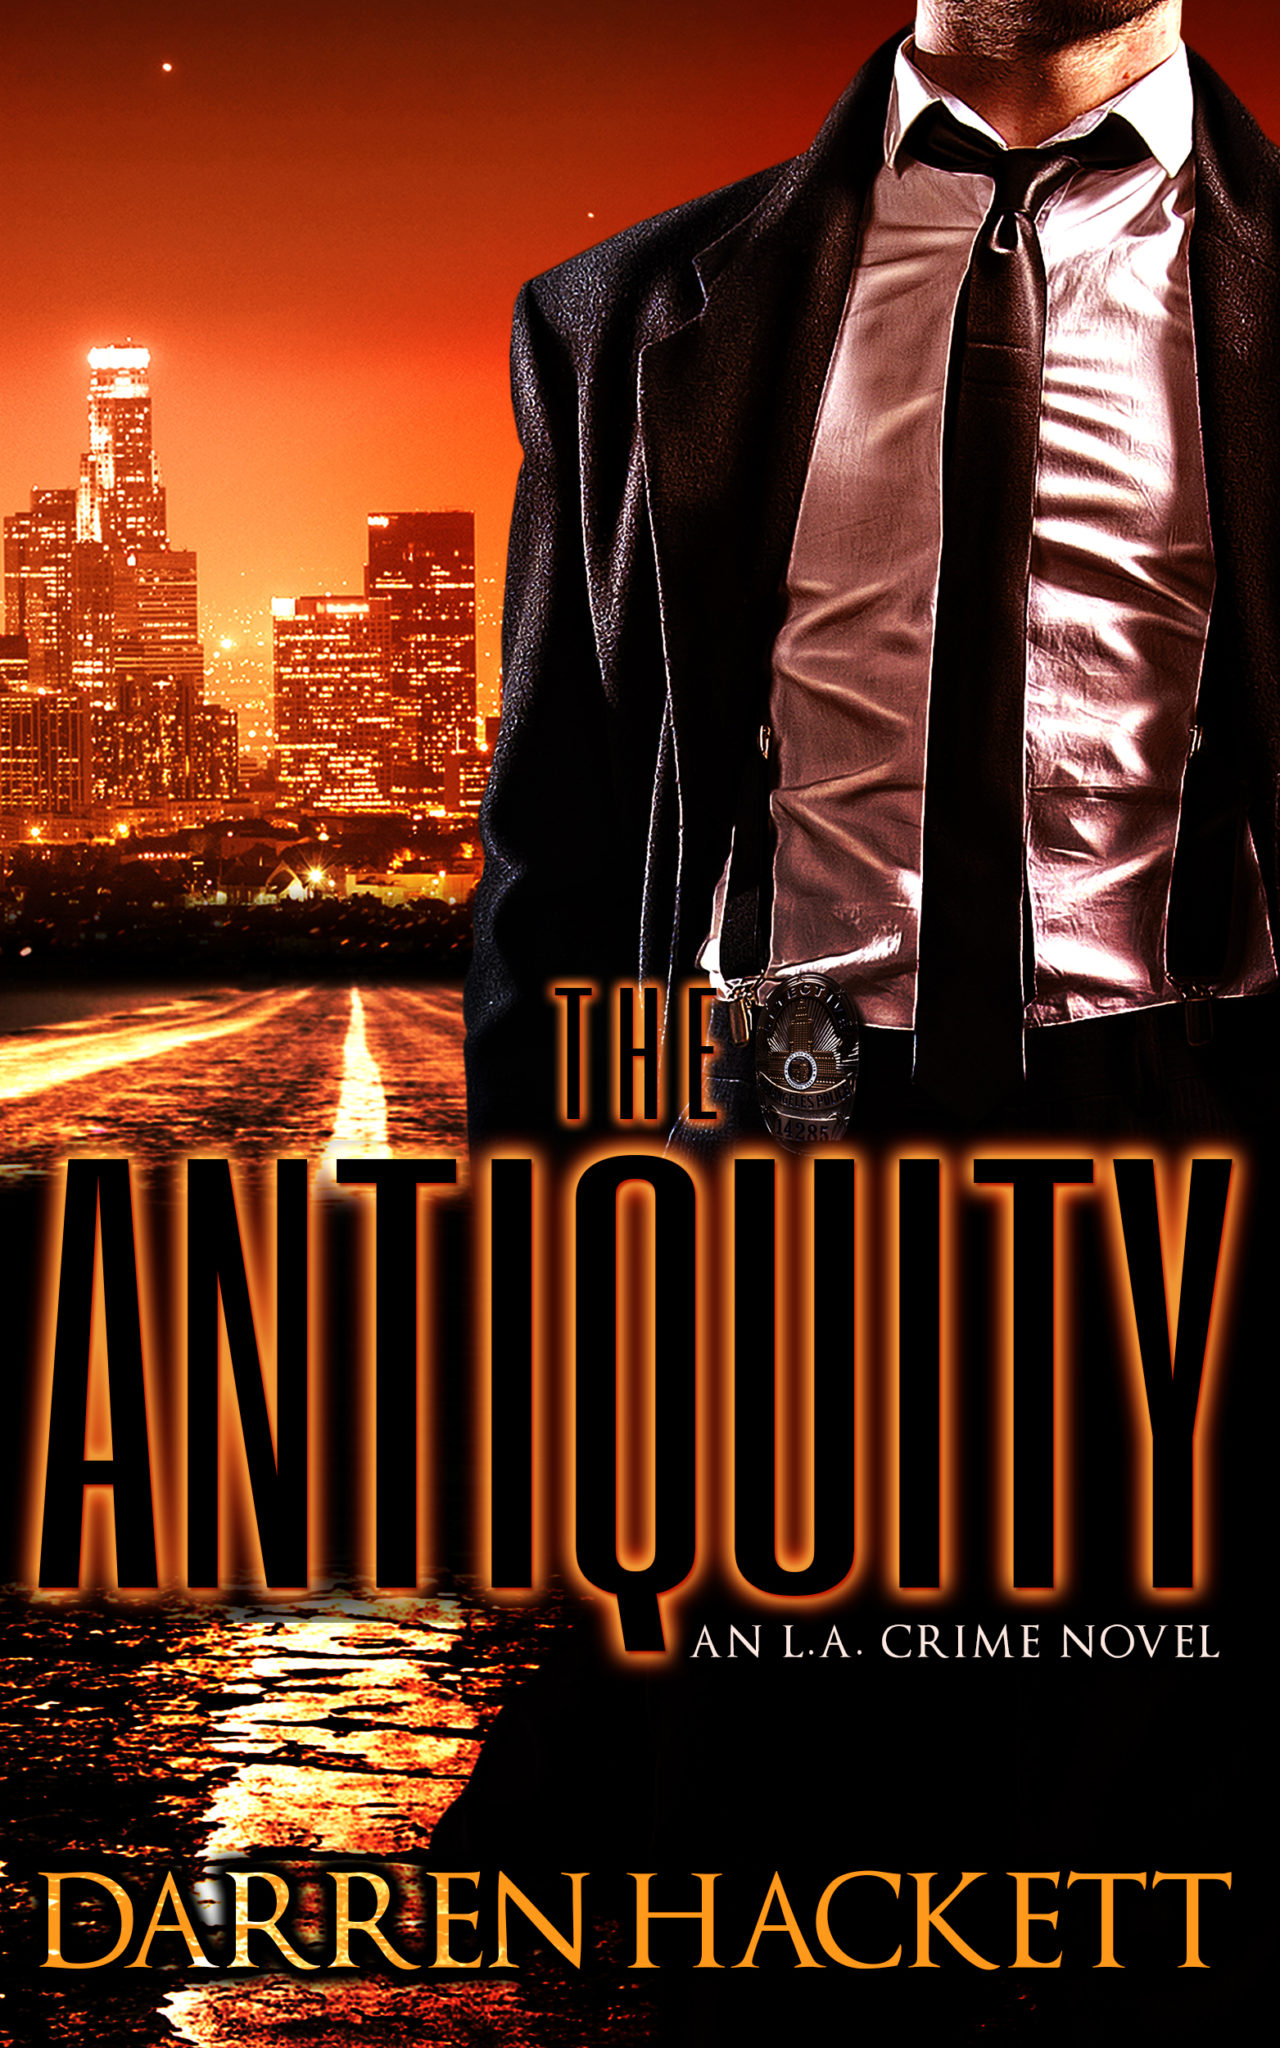 The Antiquity: An L.A. Crime Novel by Darren Hackett